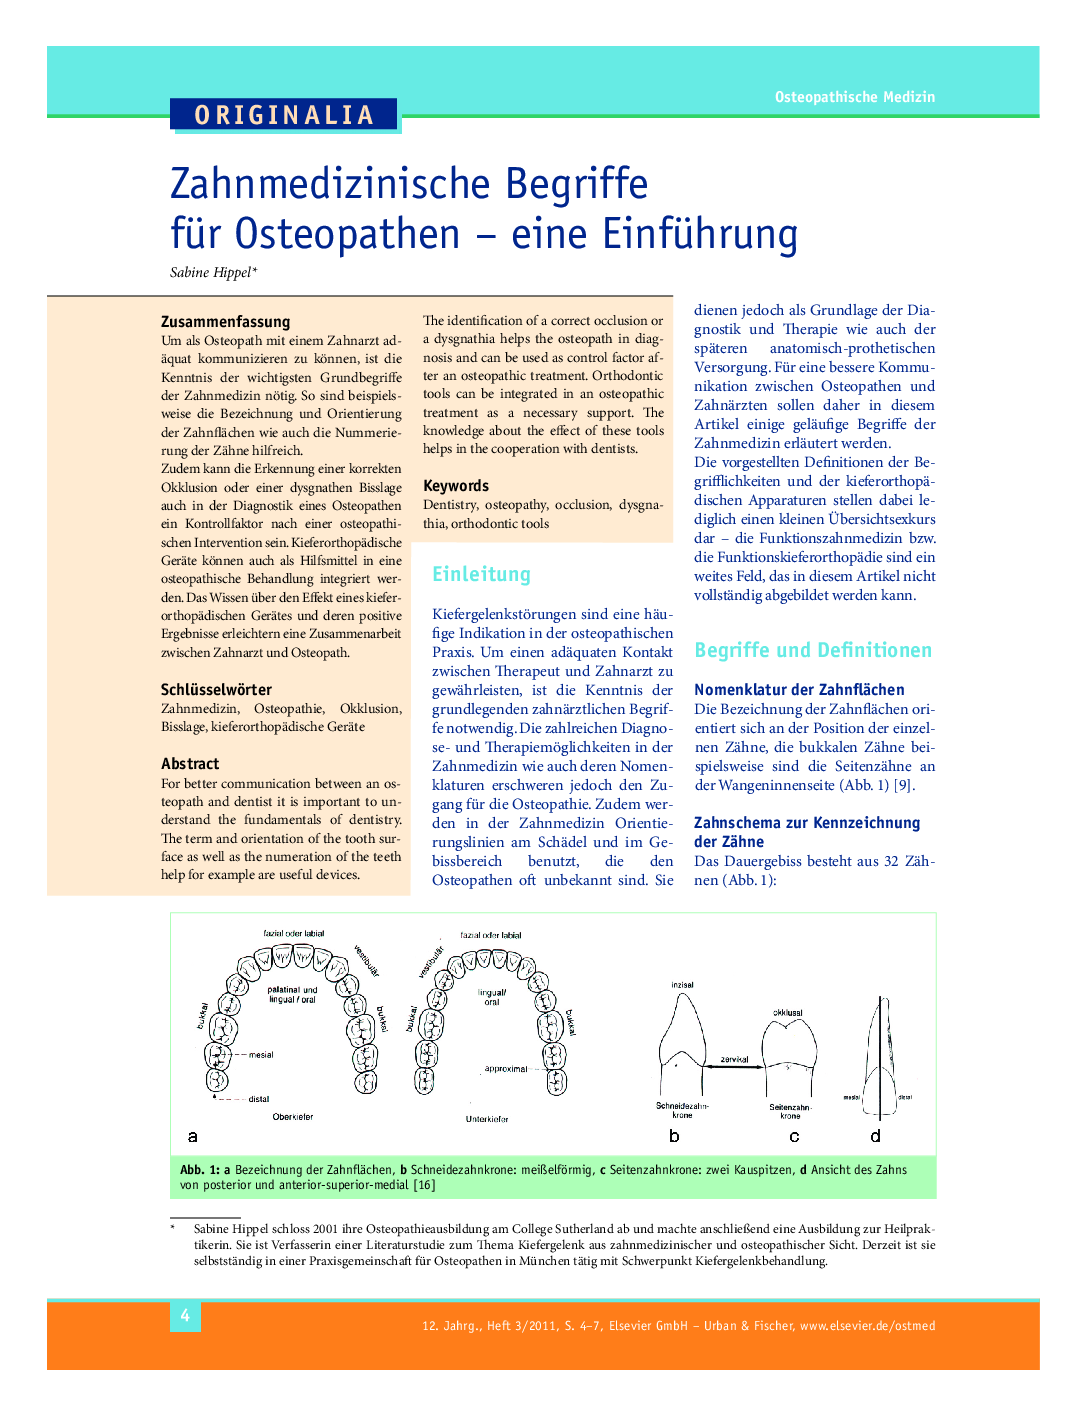 Zahnmedizinische Begriffe für Osteopathen – eine Einführung